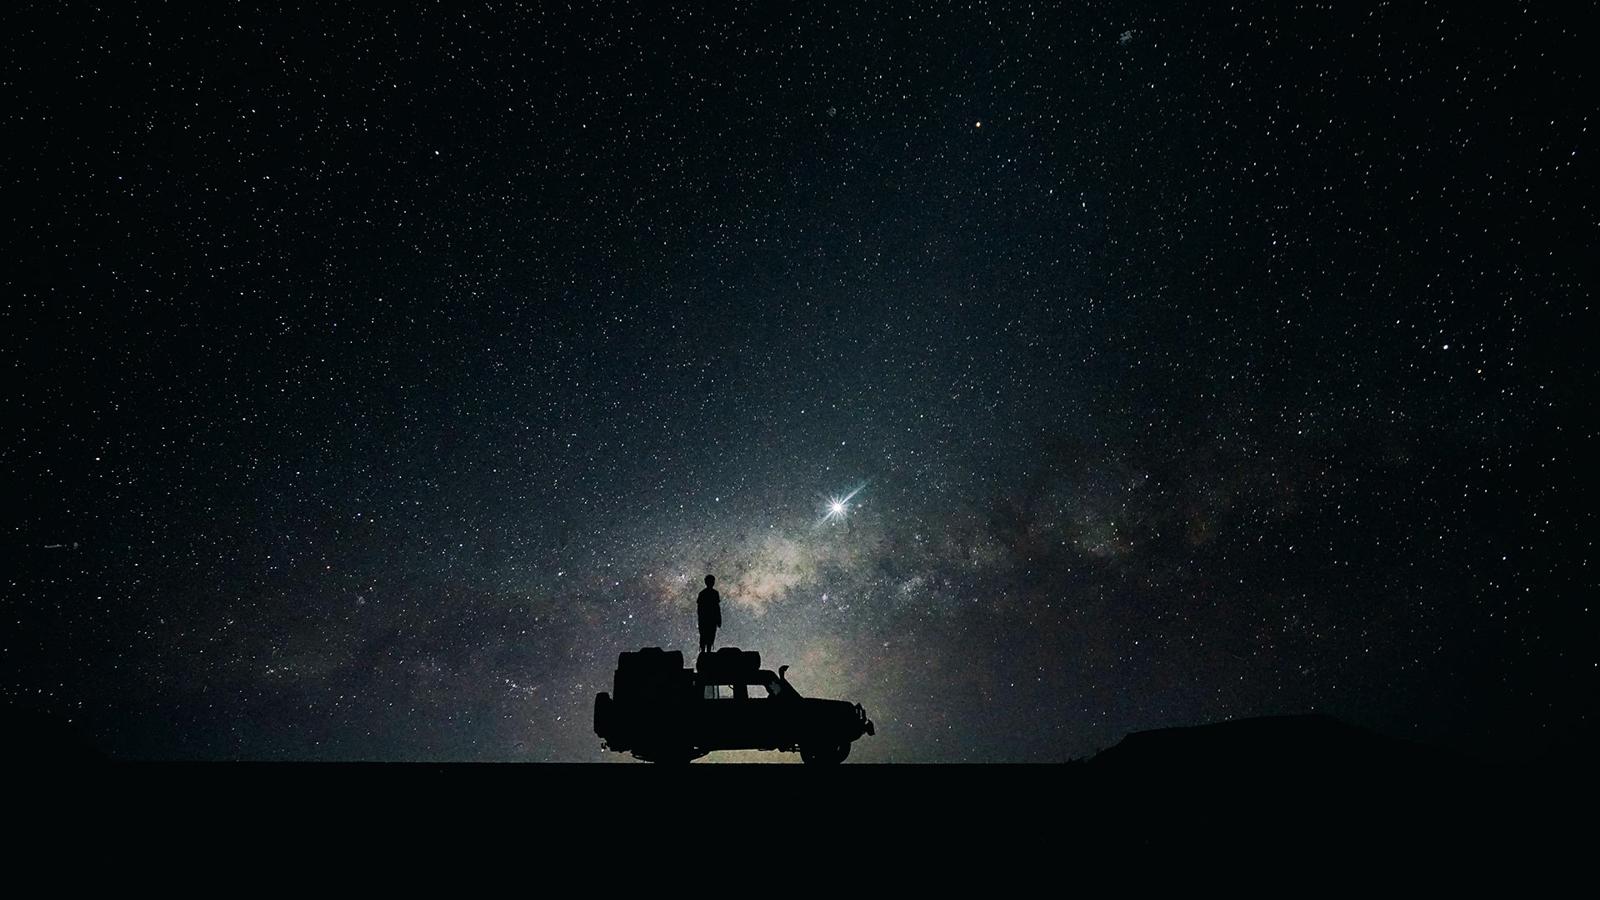 En man står på ett biltak under en stjärnhimmel